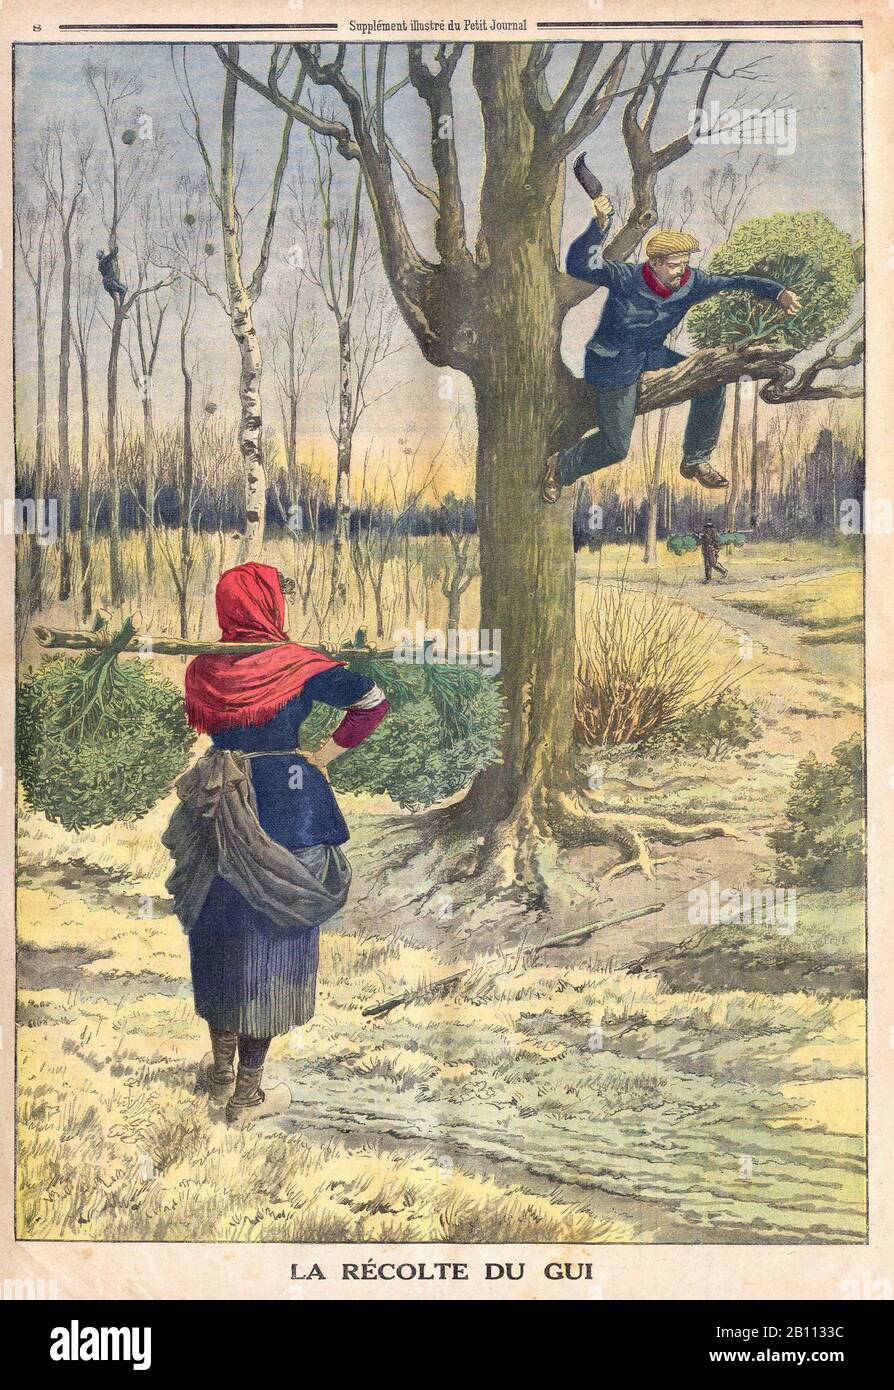 La récolte du gui - la raccolta degli errori - In 'le Petit Journal' French Illustrated Newspaper - Foto Stock